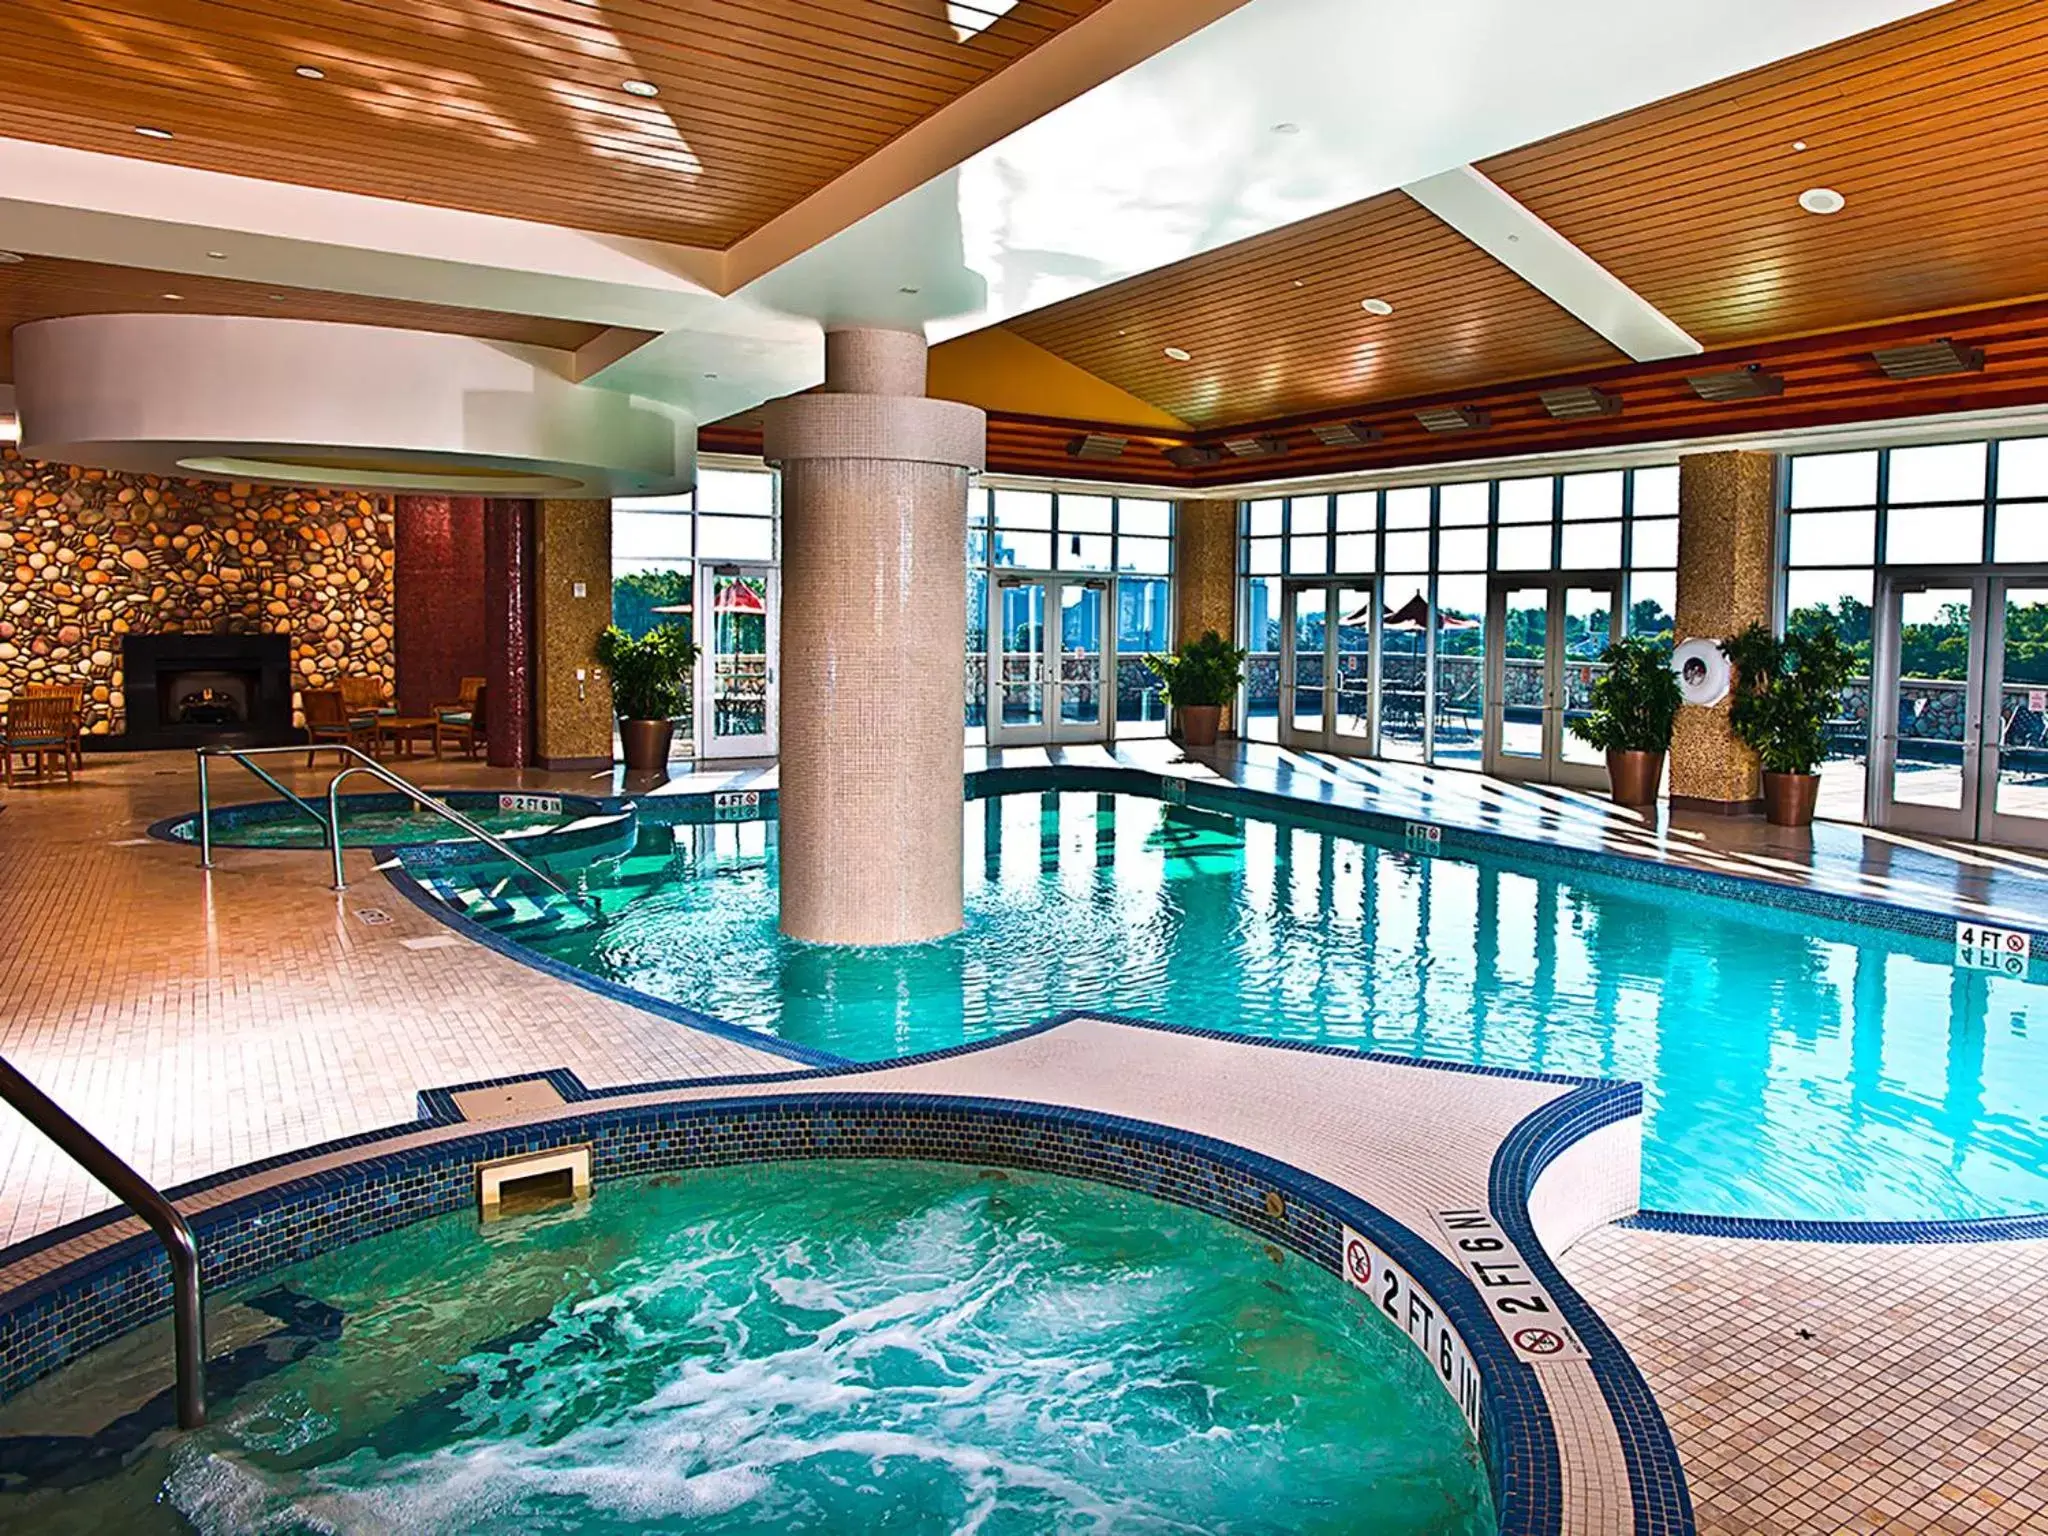 Swimming Pool in Seneca Niagara Resort & Casino